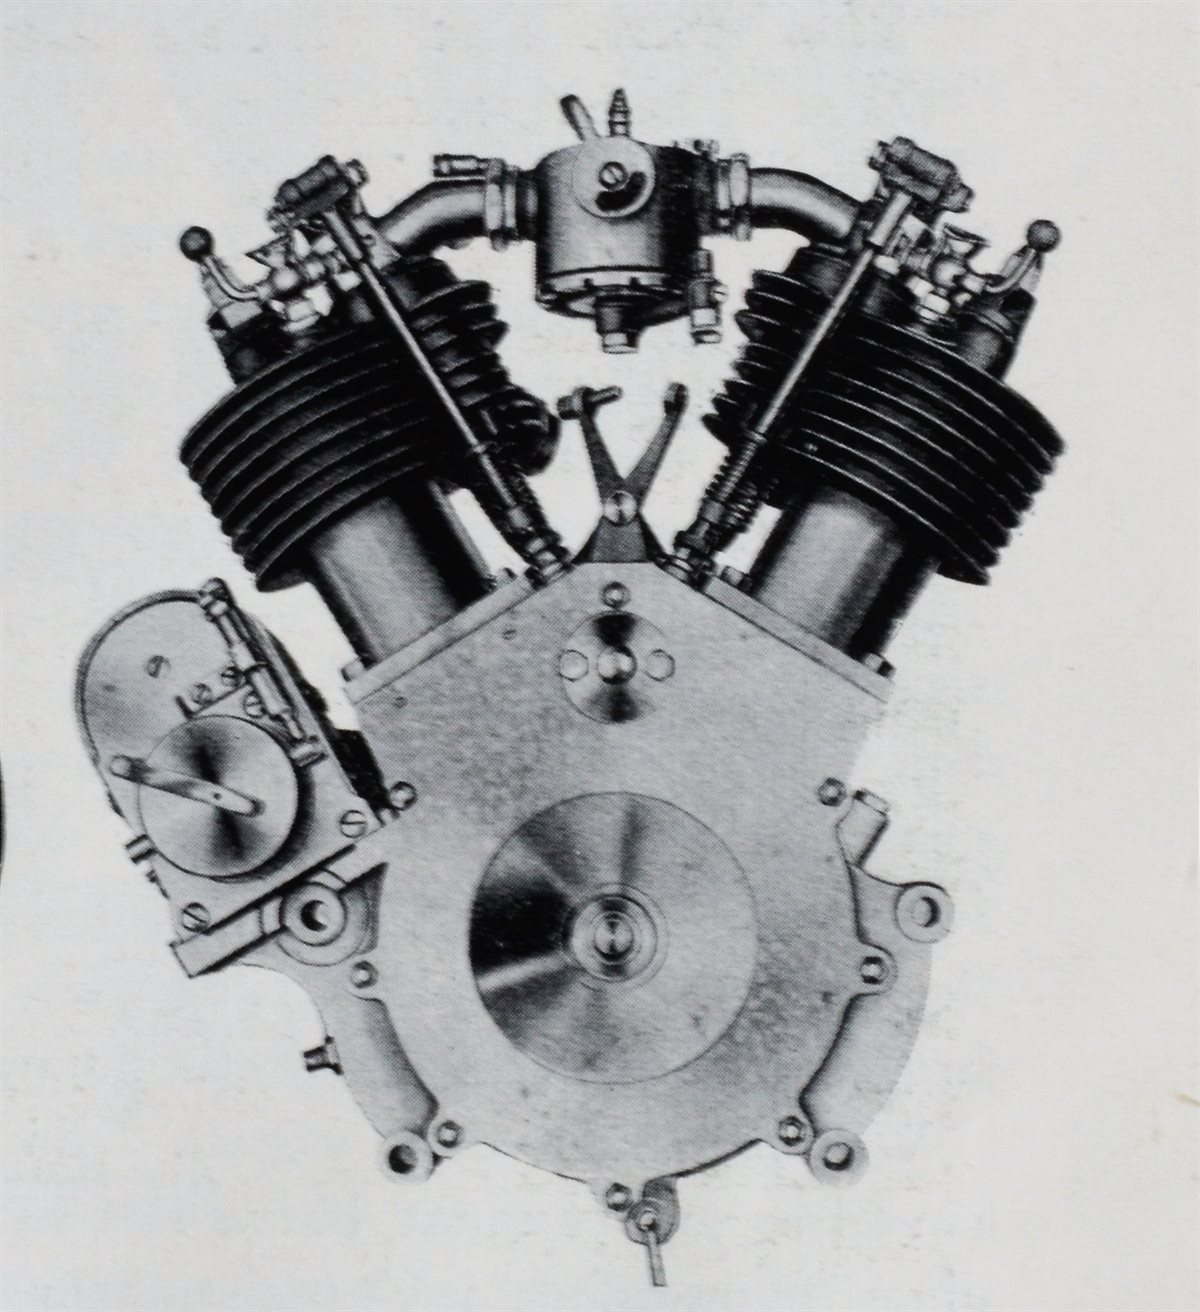 Husqvarna Engine